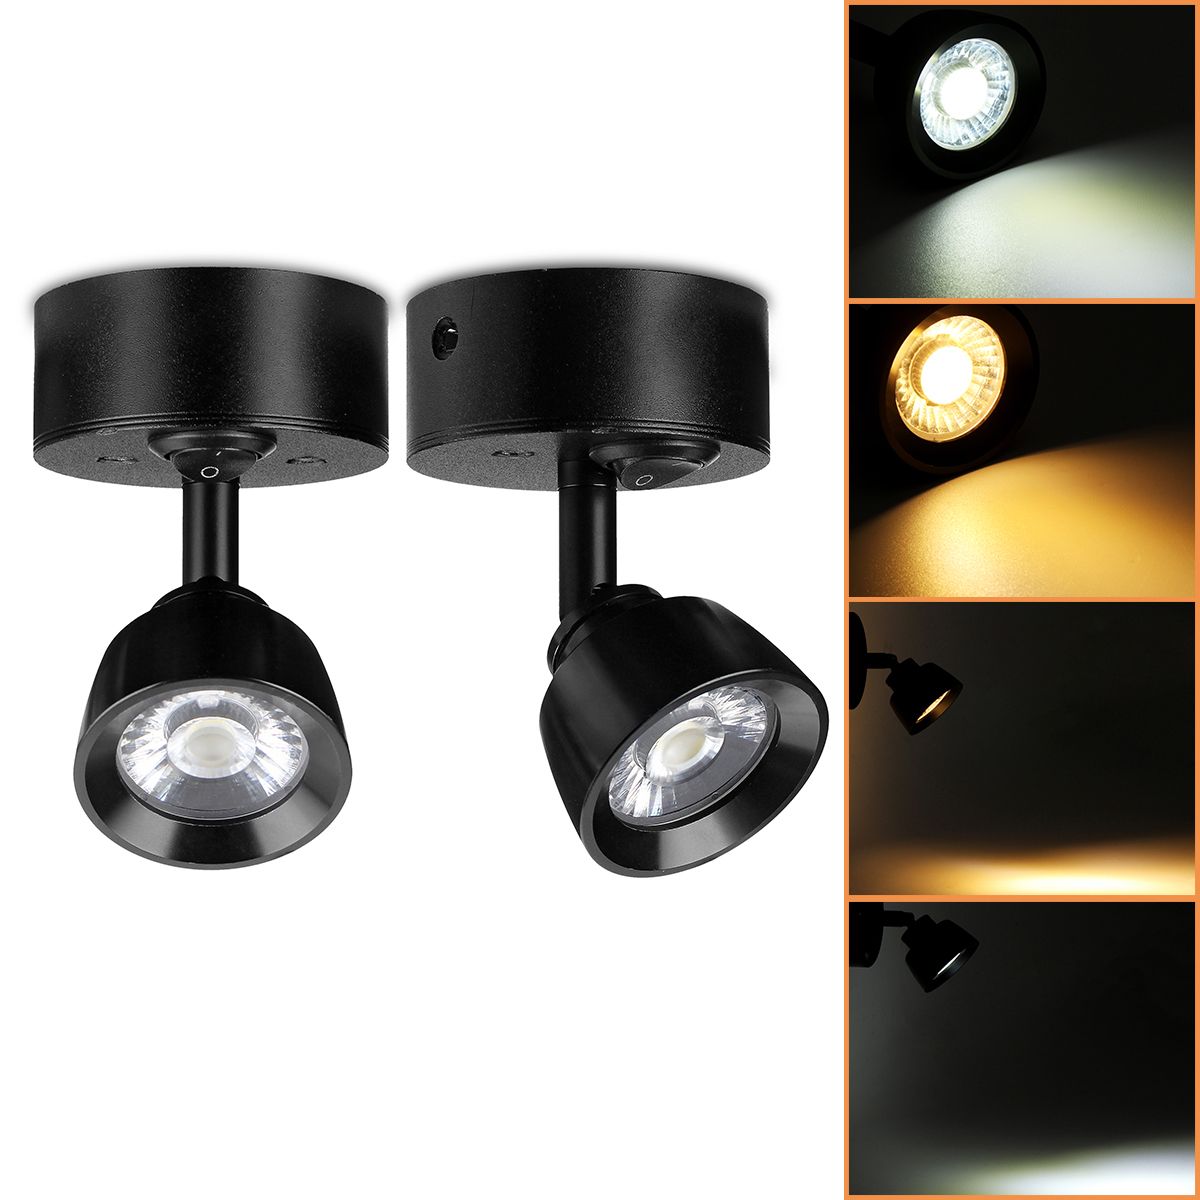 LED-Spot-Beam-Lights-Reading-Lamp-3000K-6000K-12-24V-1W-for-Bedside-Caravan-Boat-RV-Truck-1421399